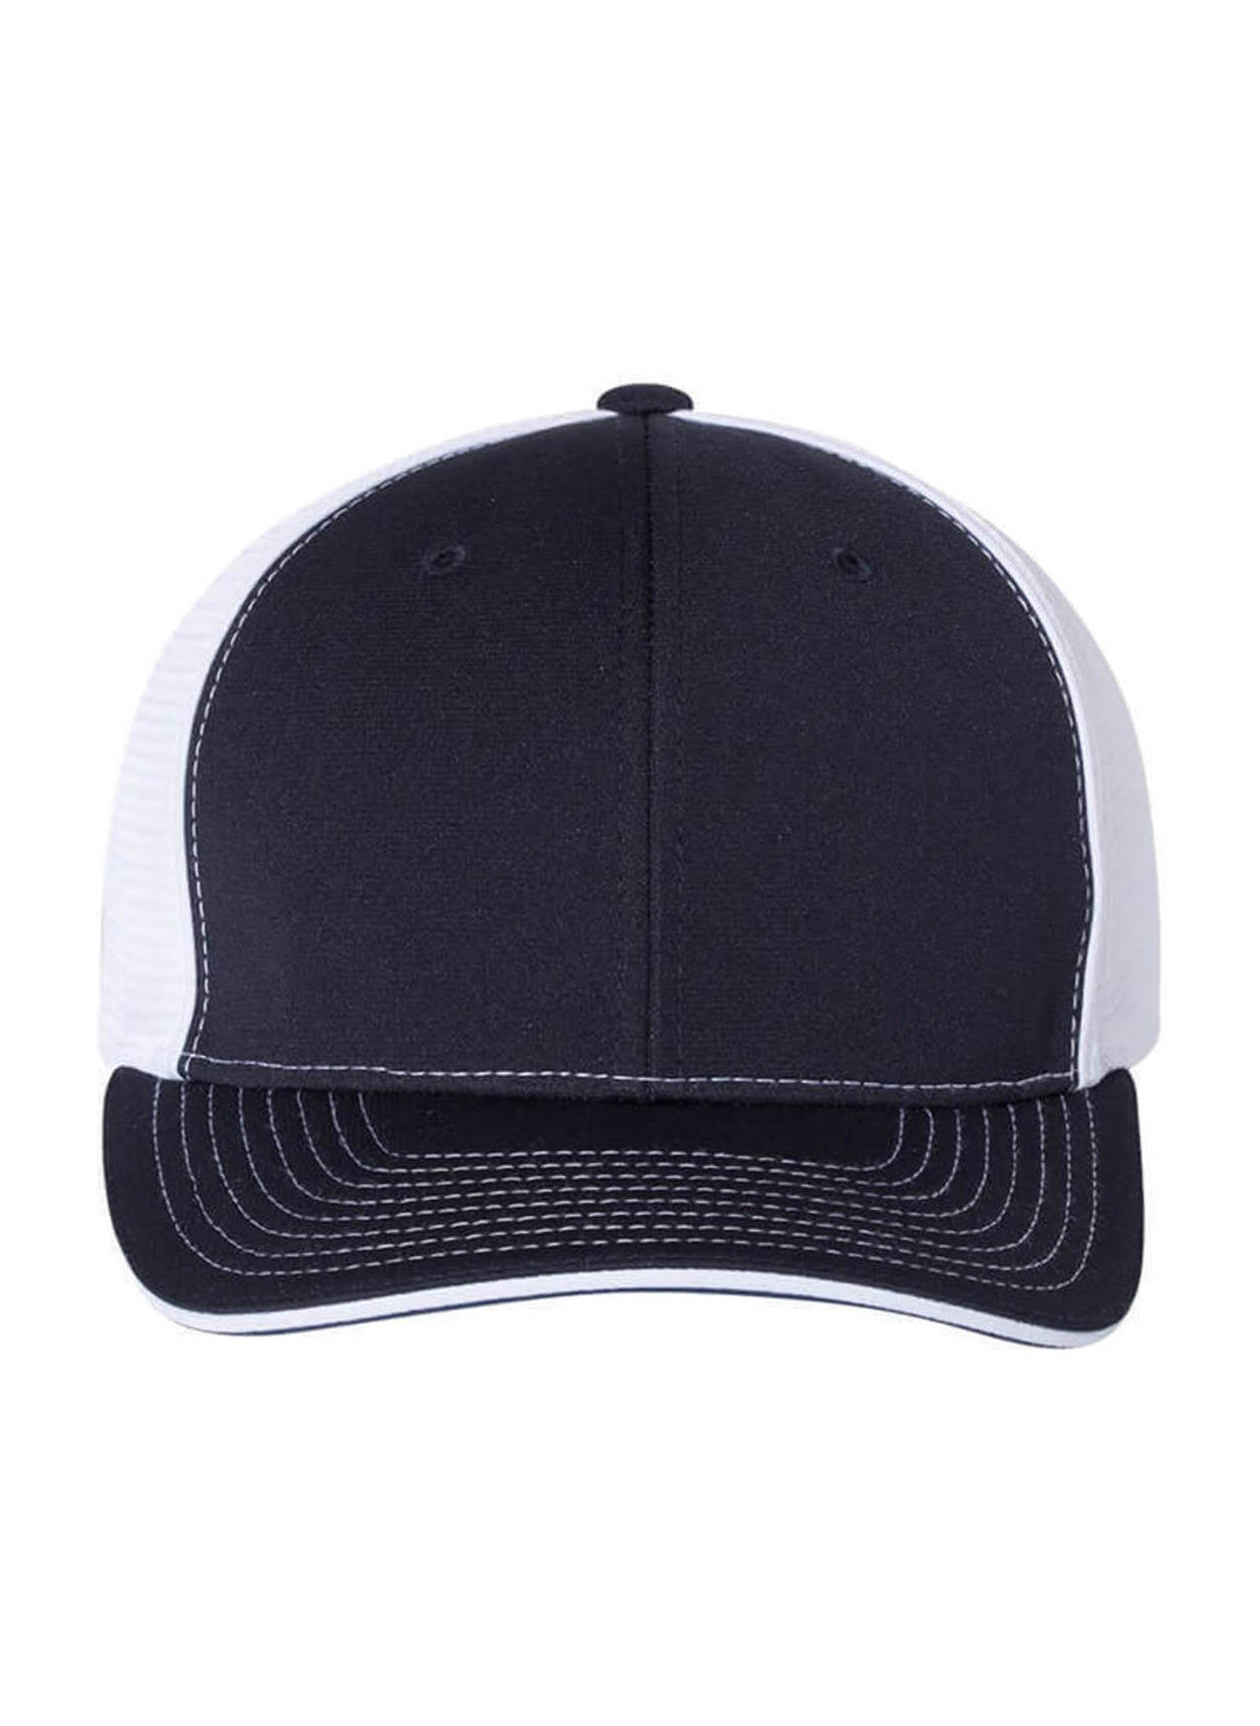 Richardson Navy / White Trucker Hat